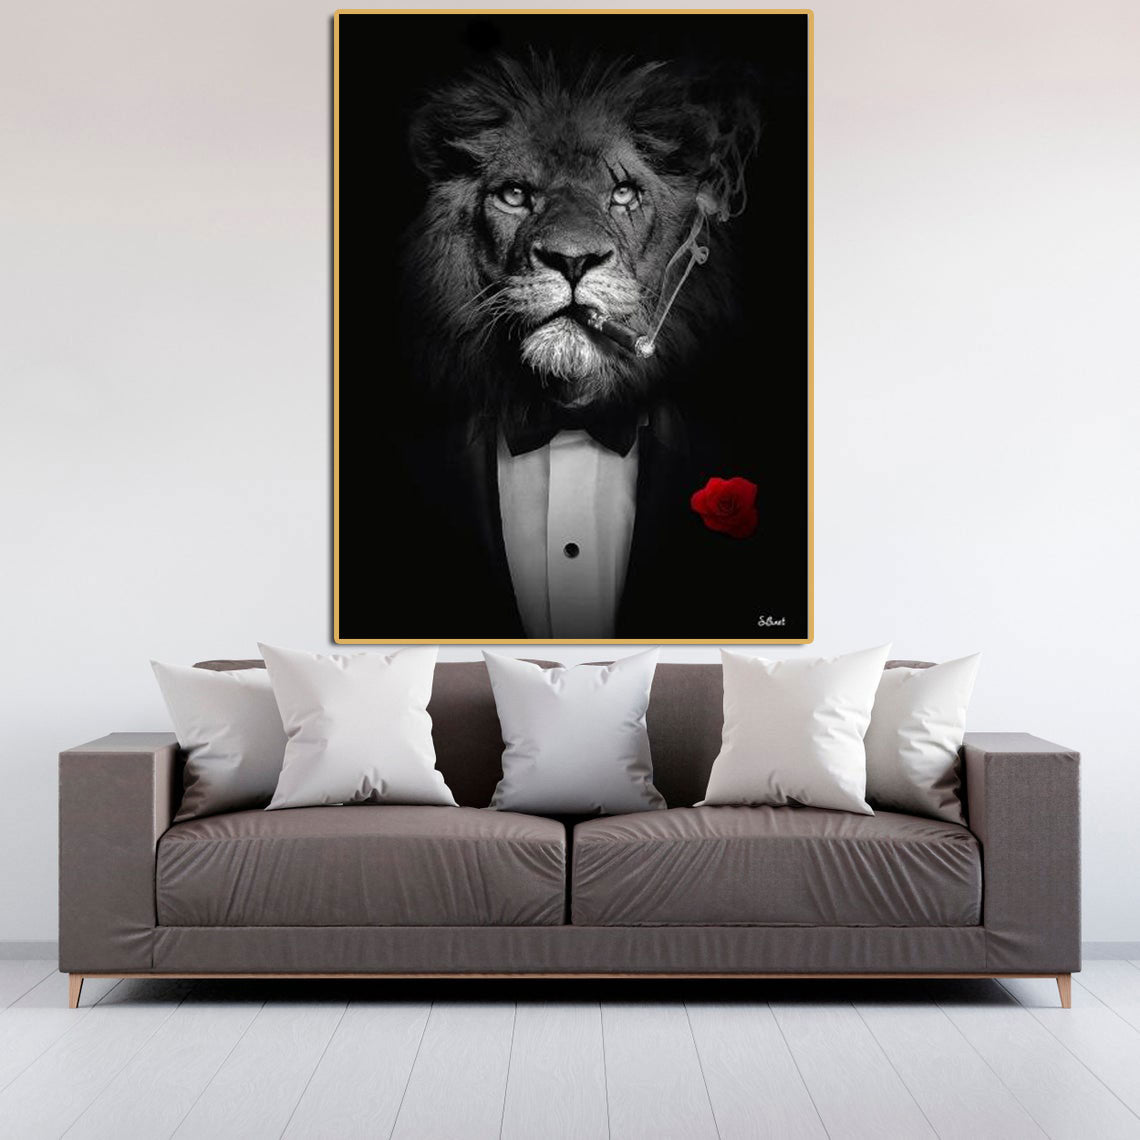 Unique Lion in Suit Canvases